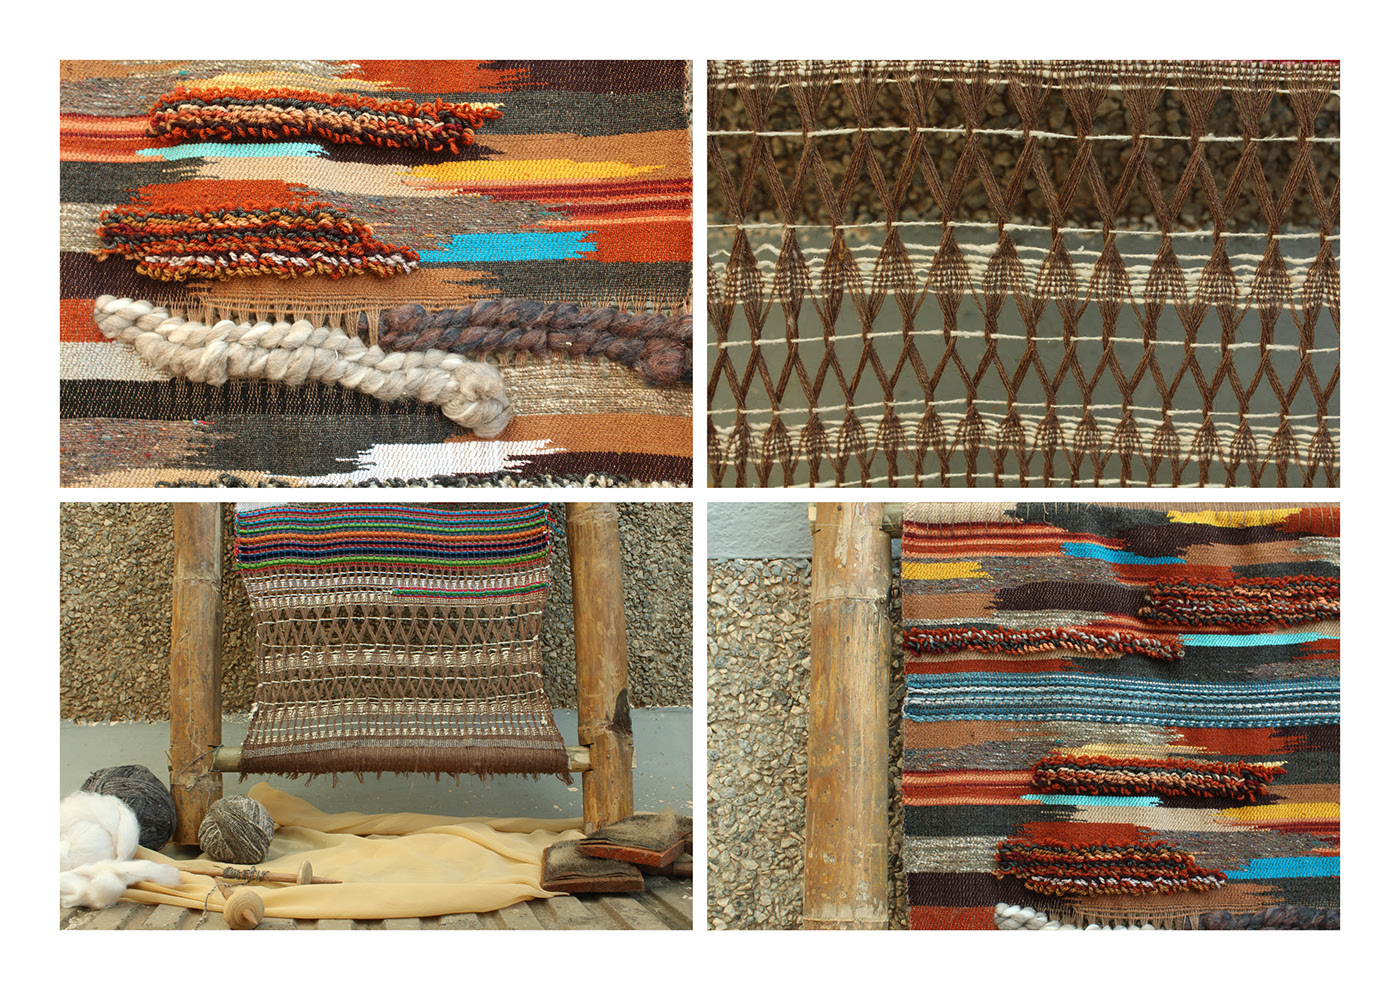 #artisans #Himachal #crafts #textile #art #weaving  #stories #colours #collaboration